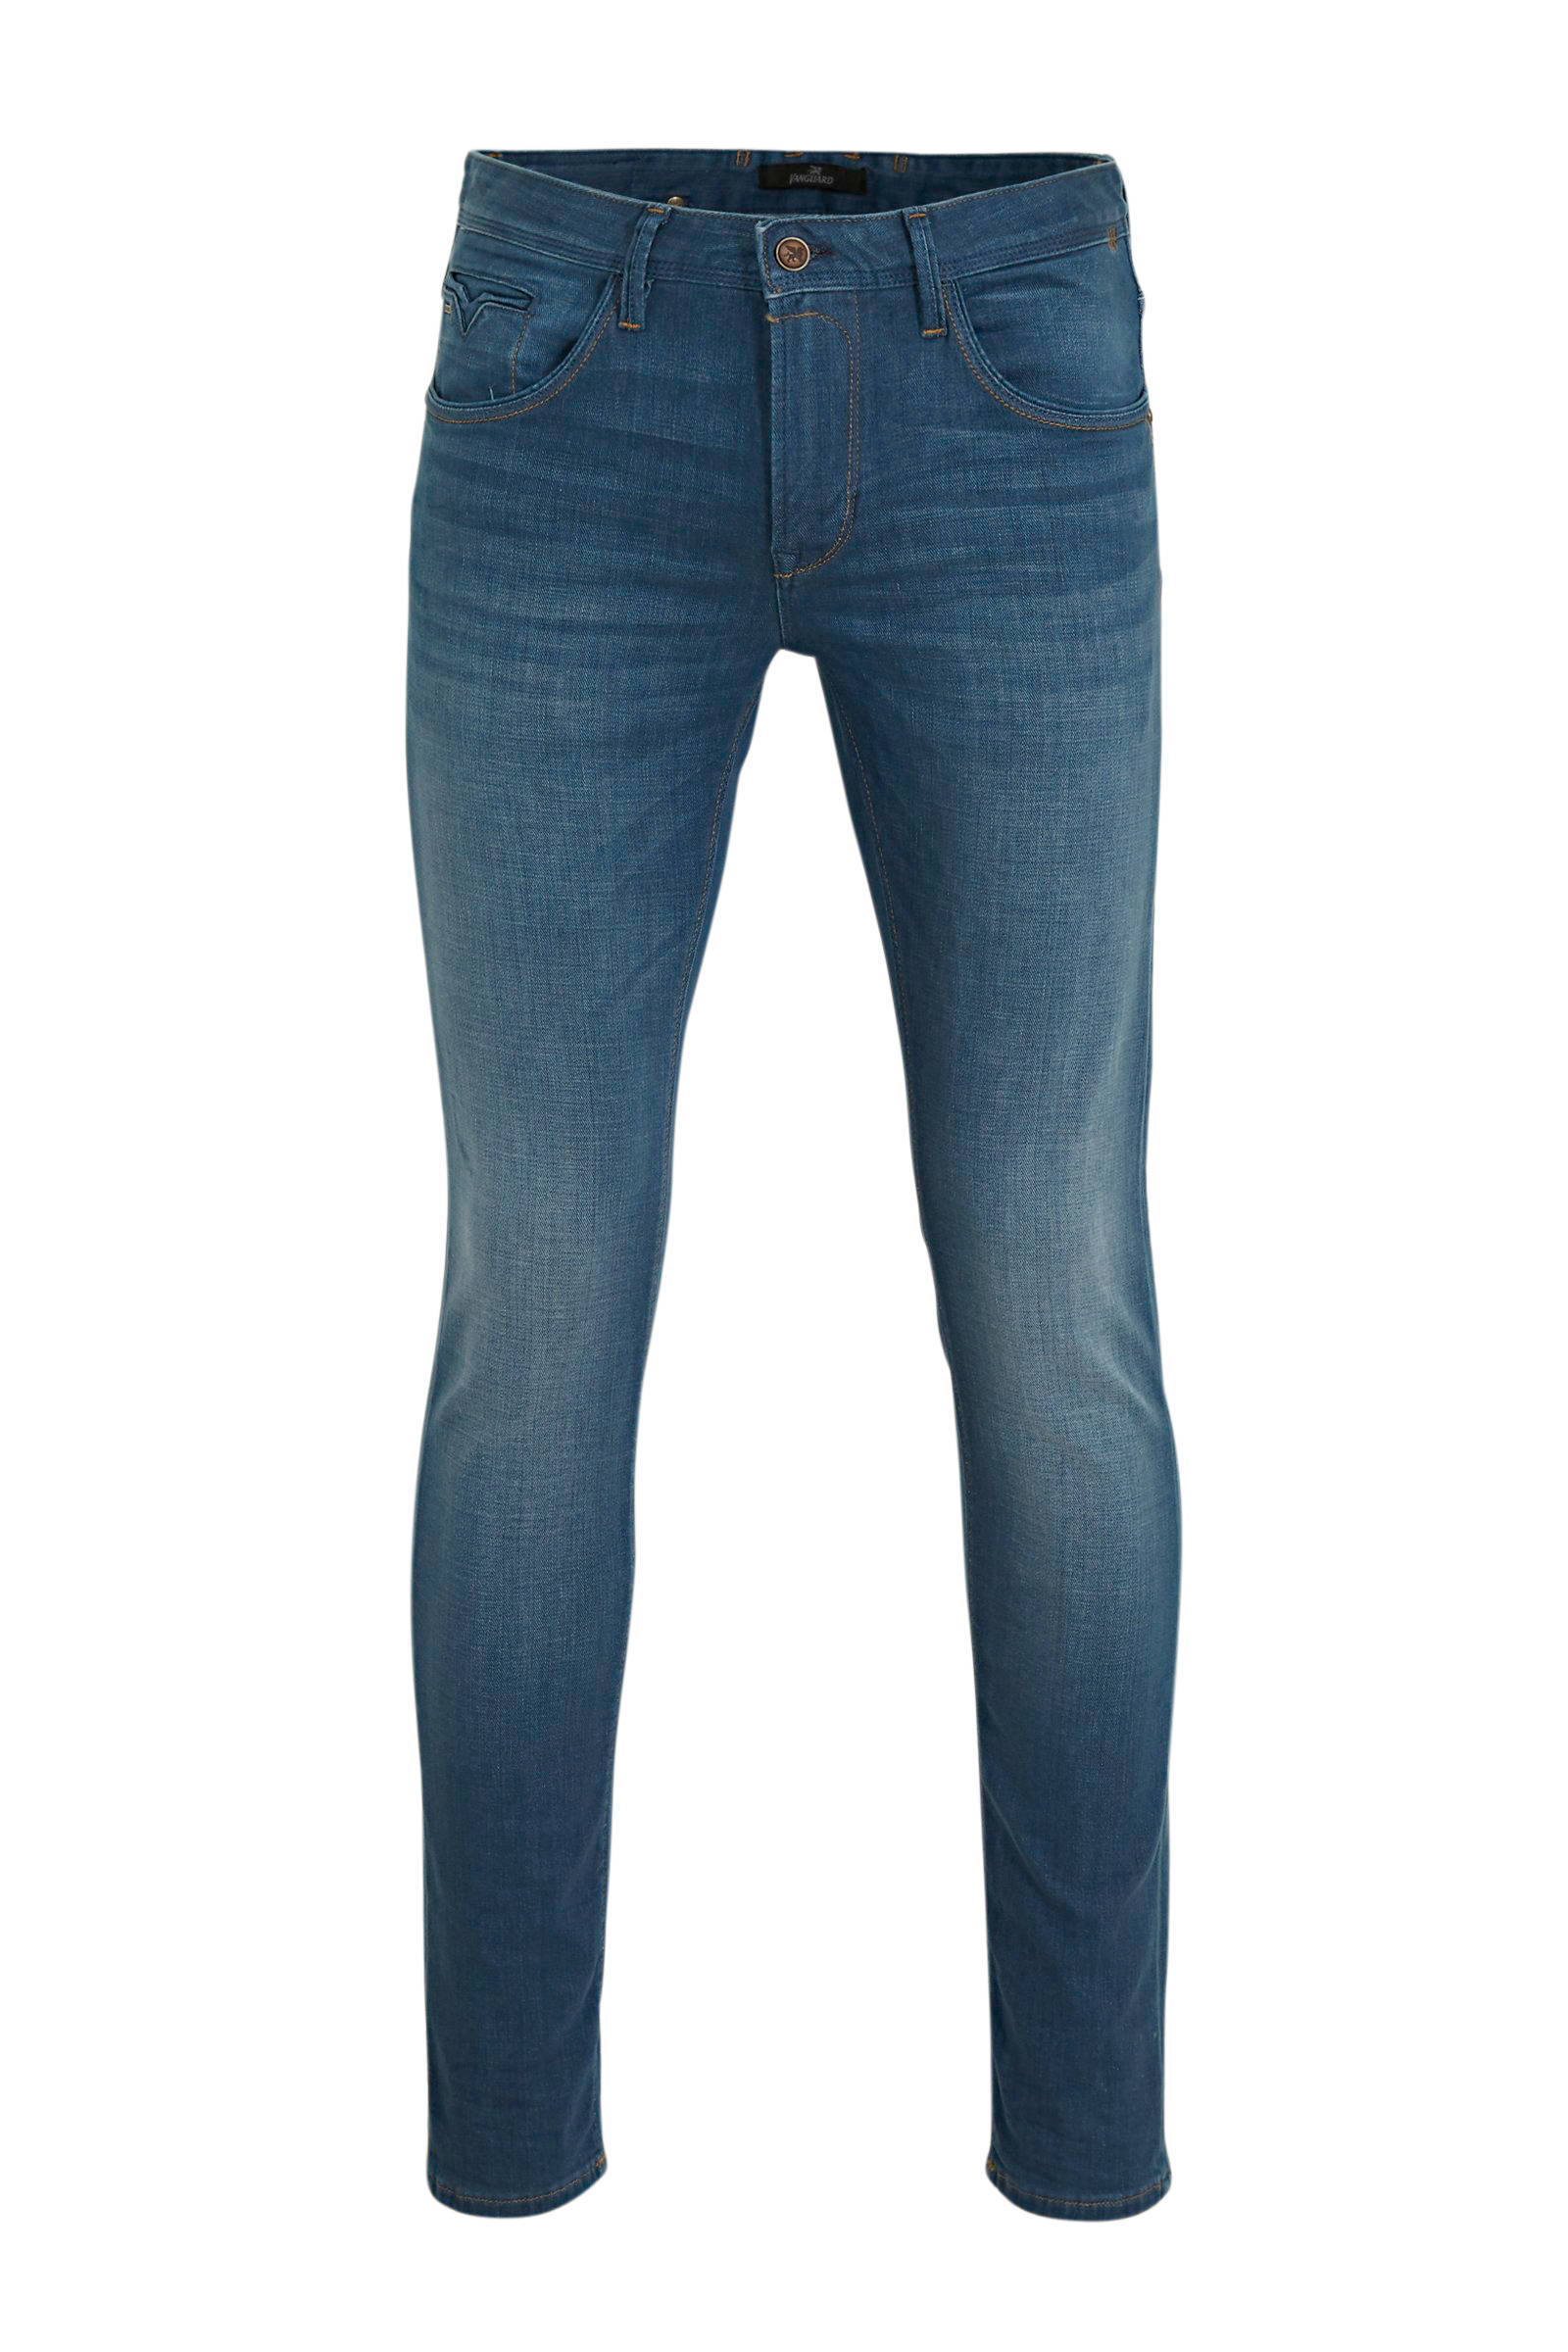 Vanguard slim fit jeans V85 scrambler left hand blue online kopen